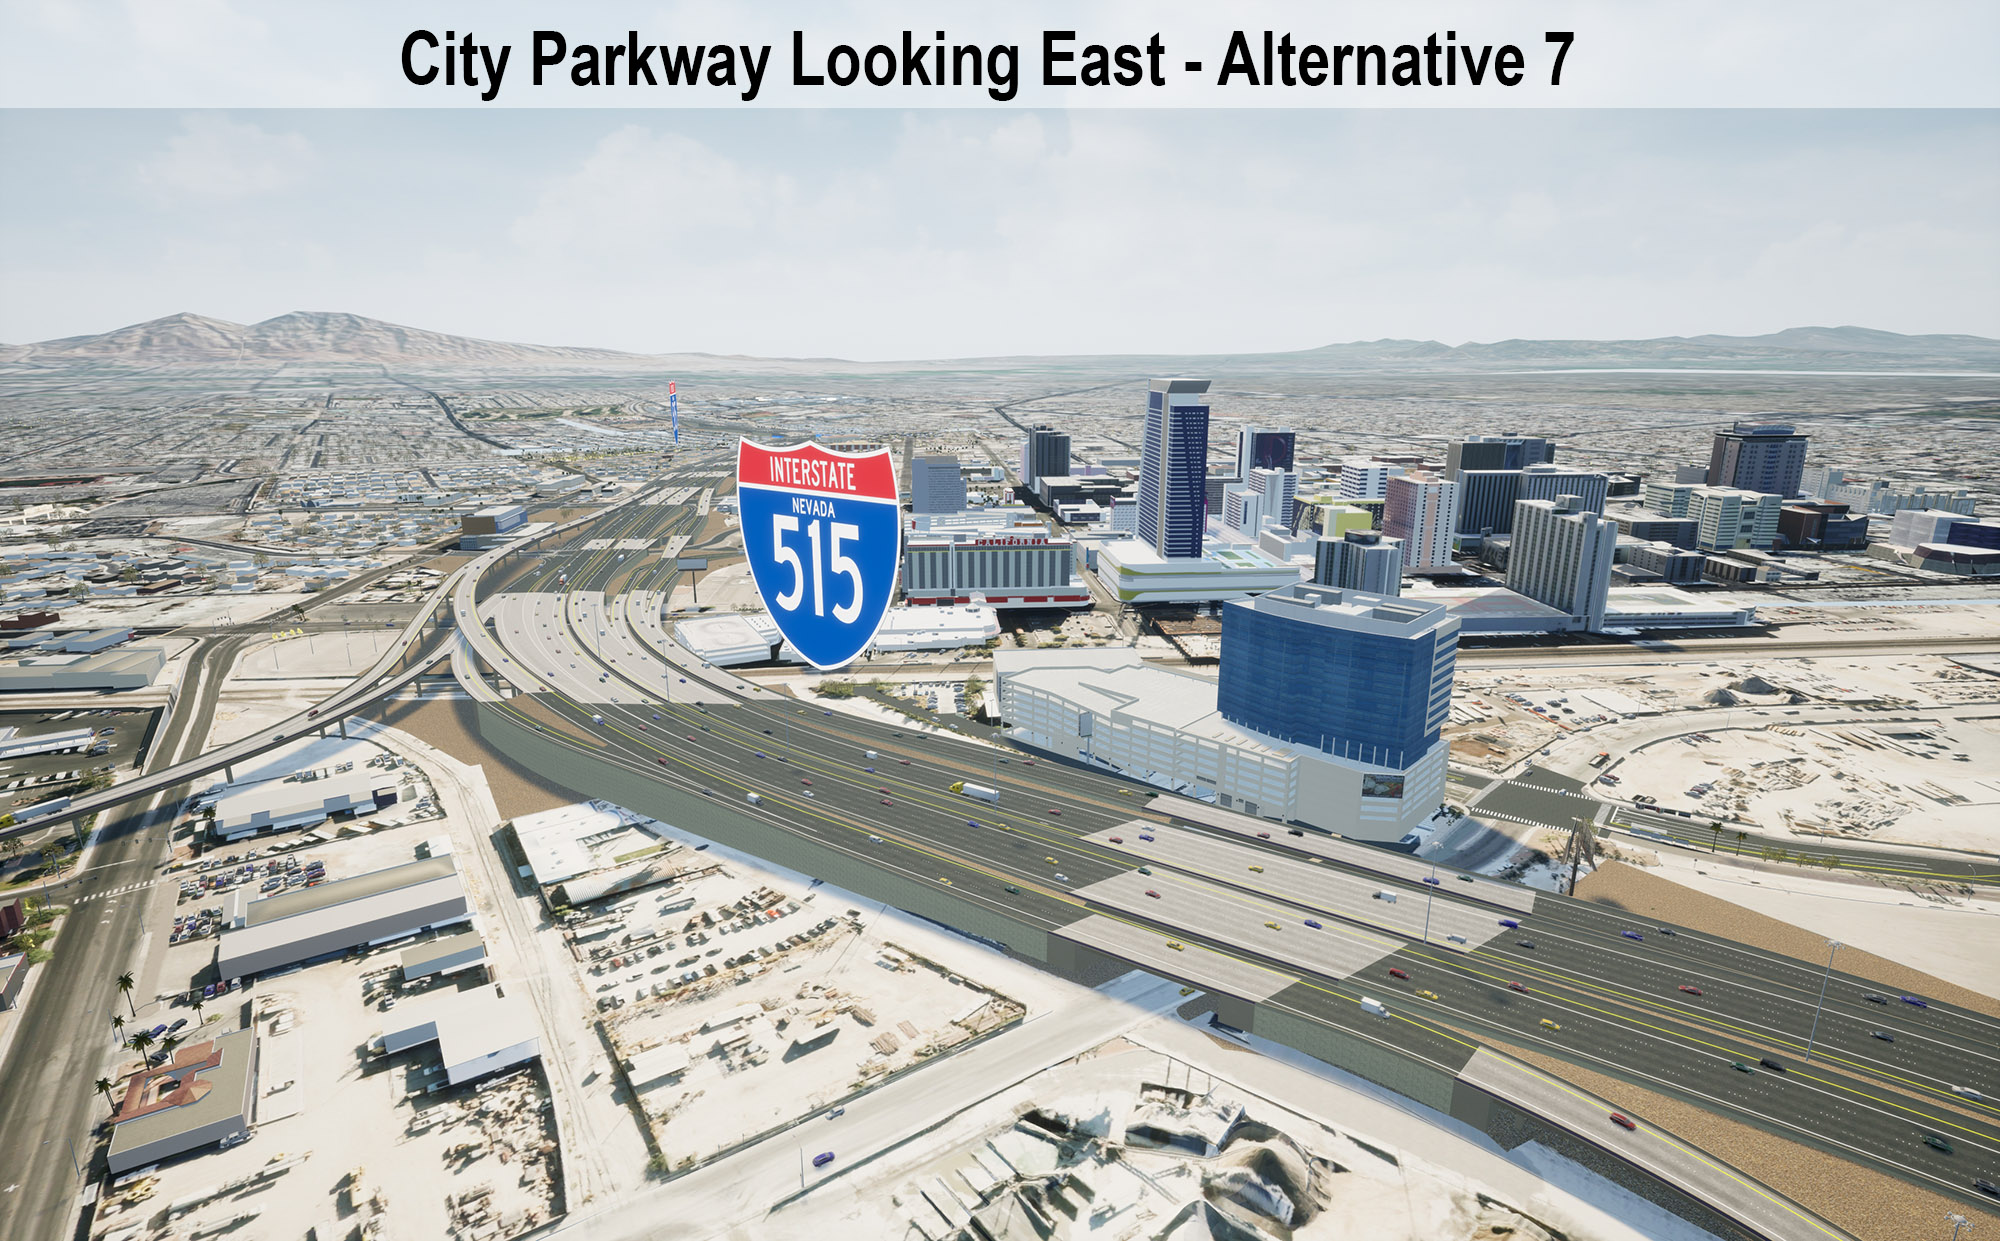 City Parkway Looking East - Alternative 7